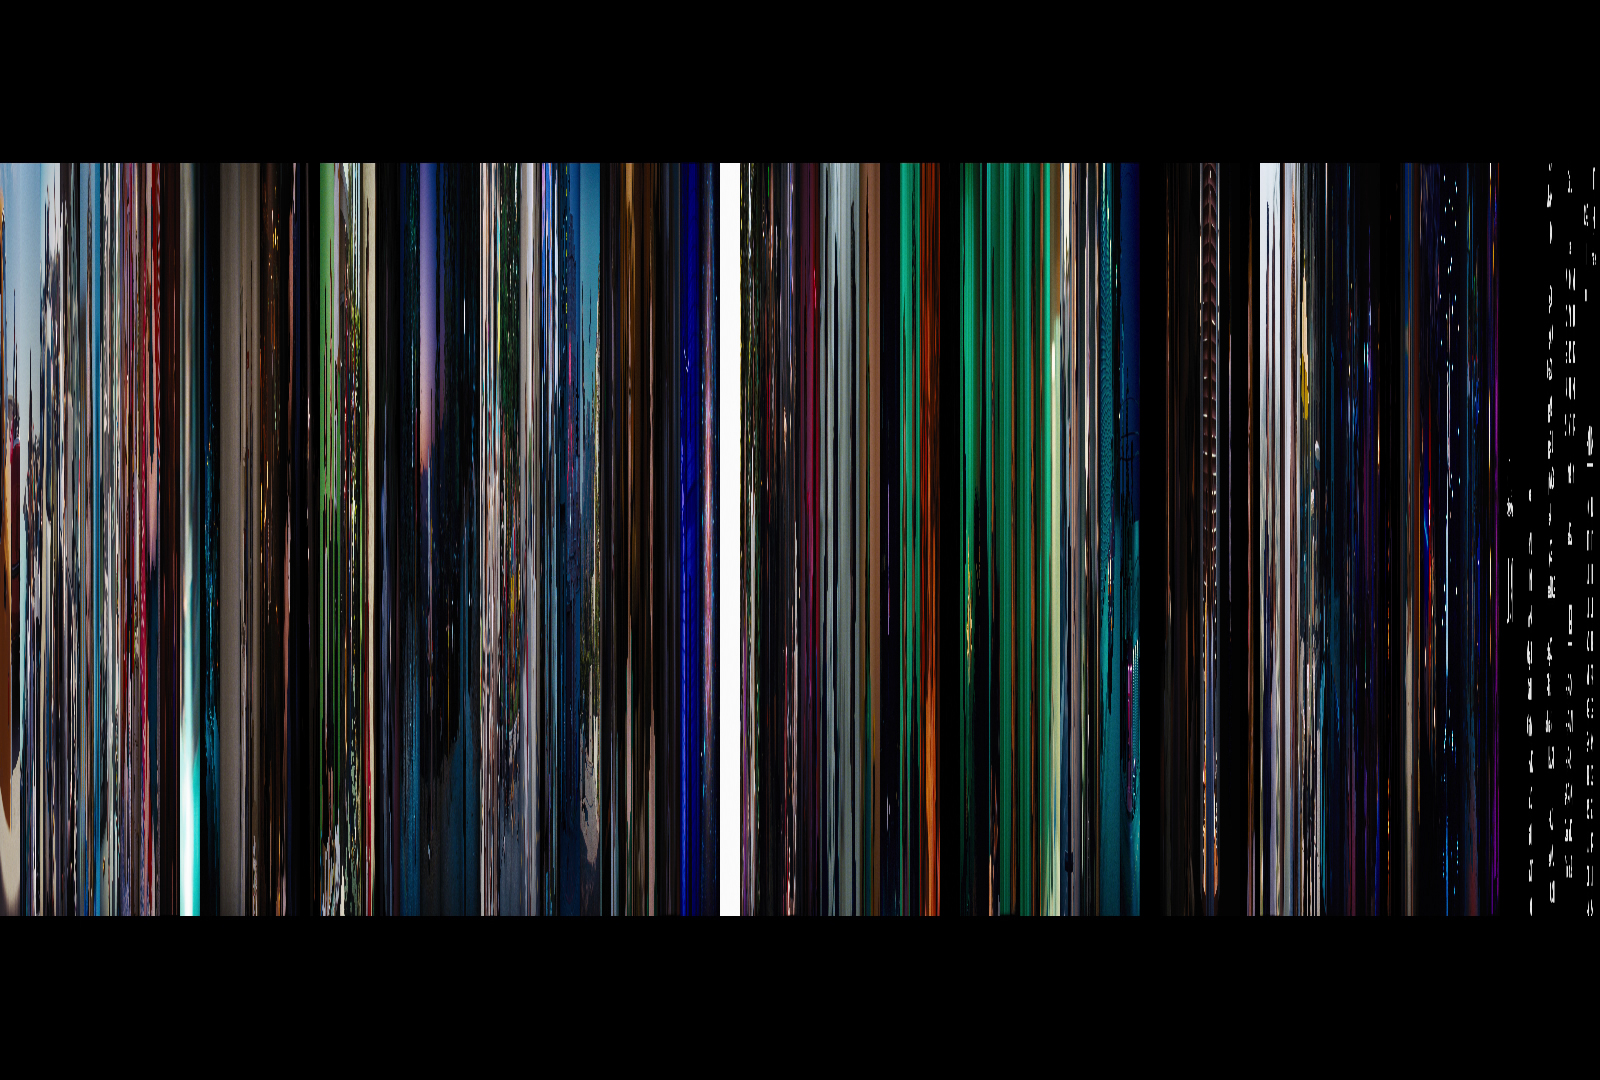 La La Land, 80 frames at 20 pixels wide each